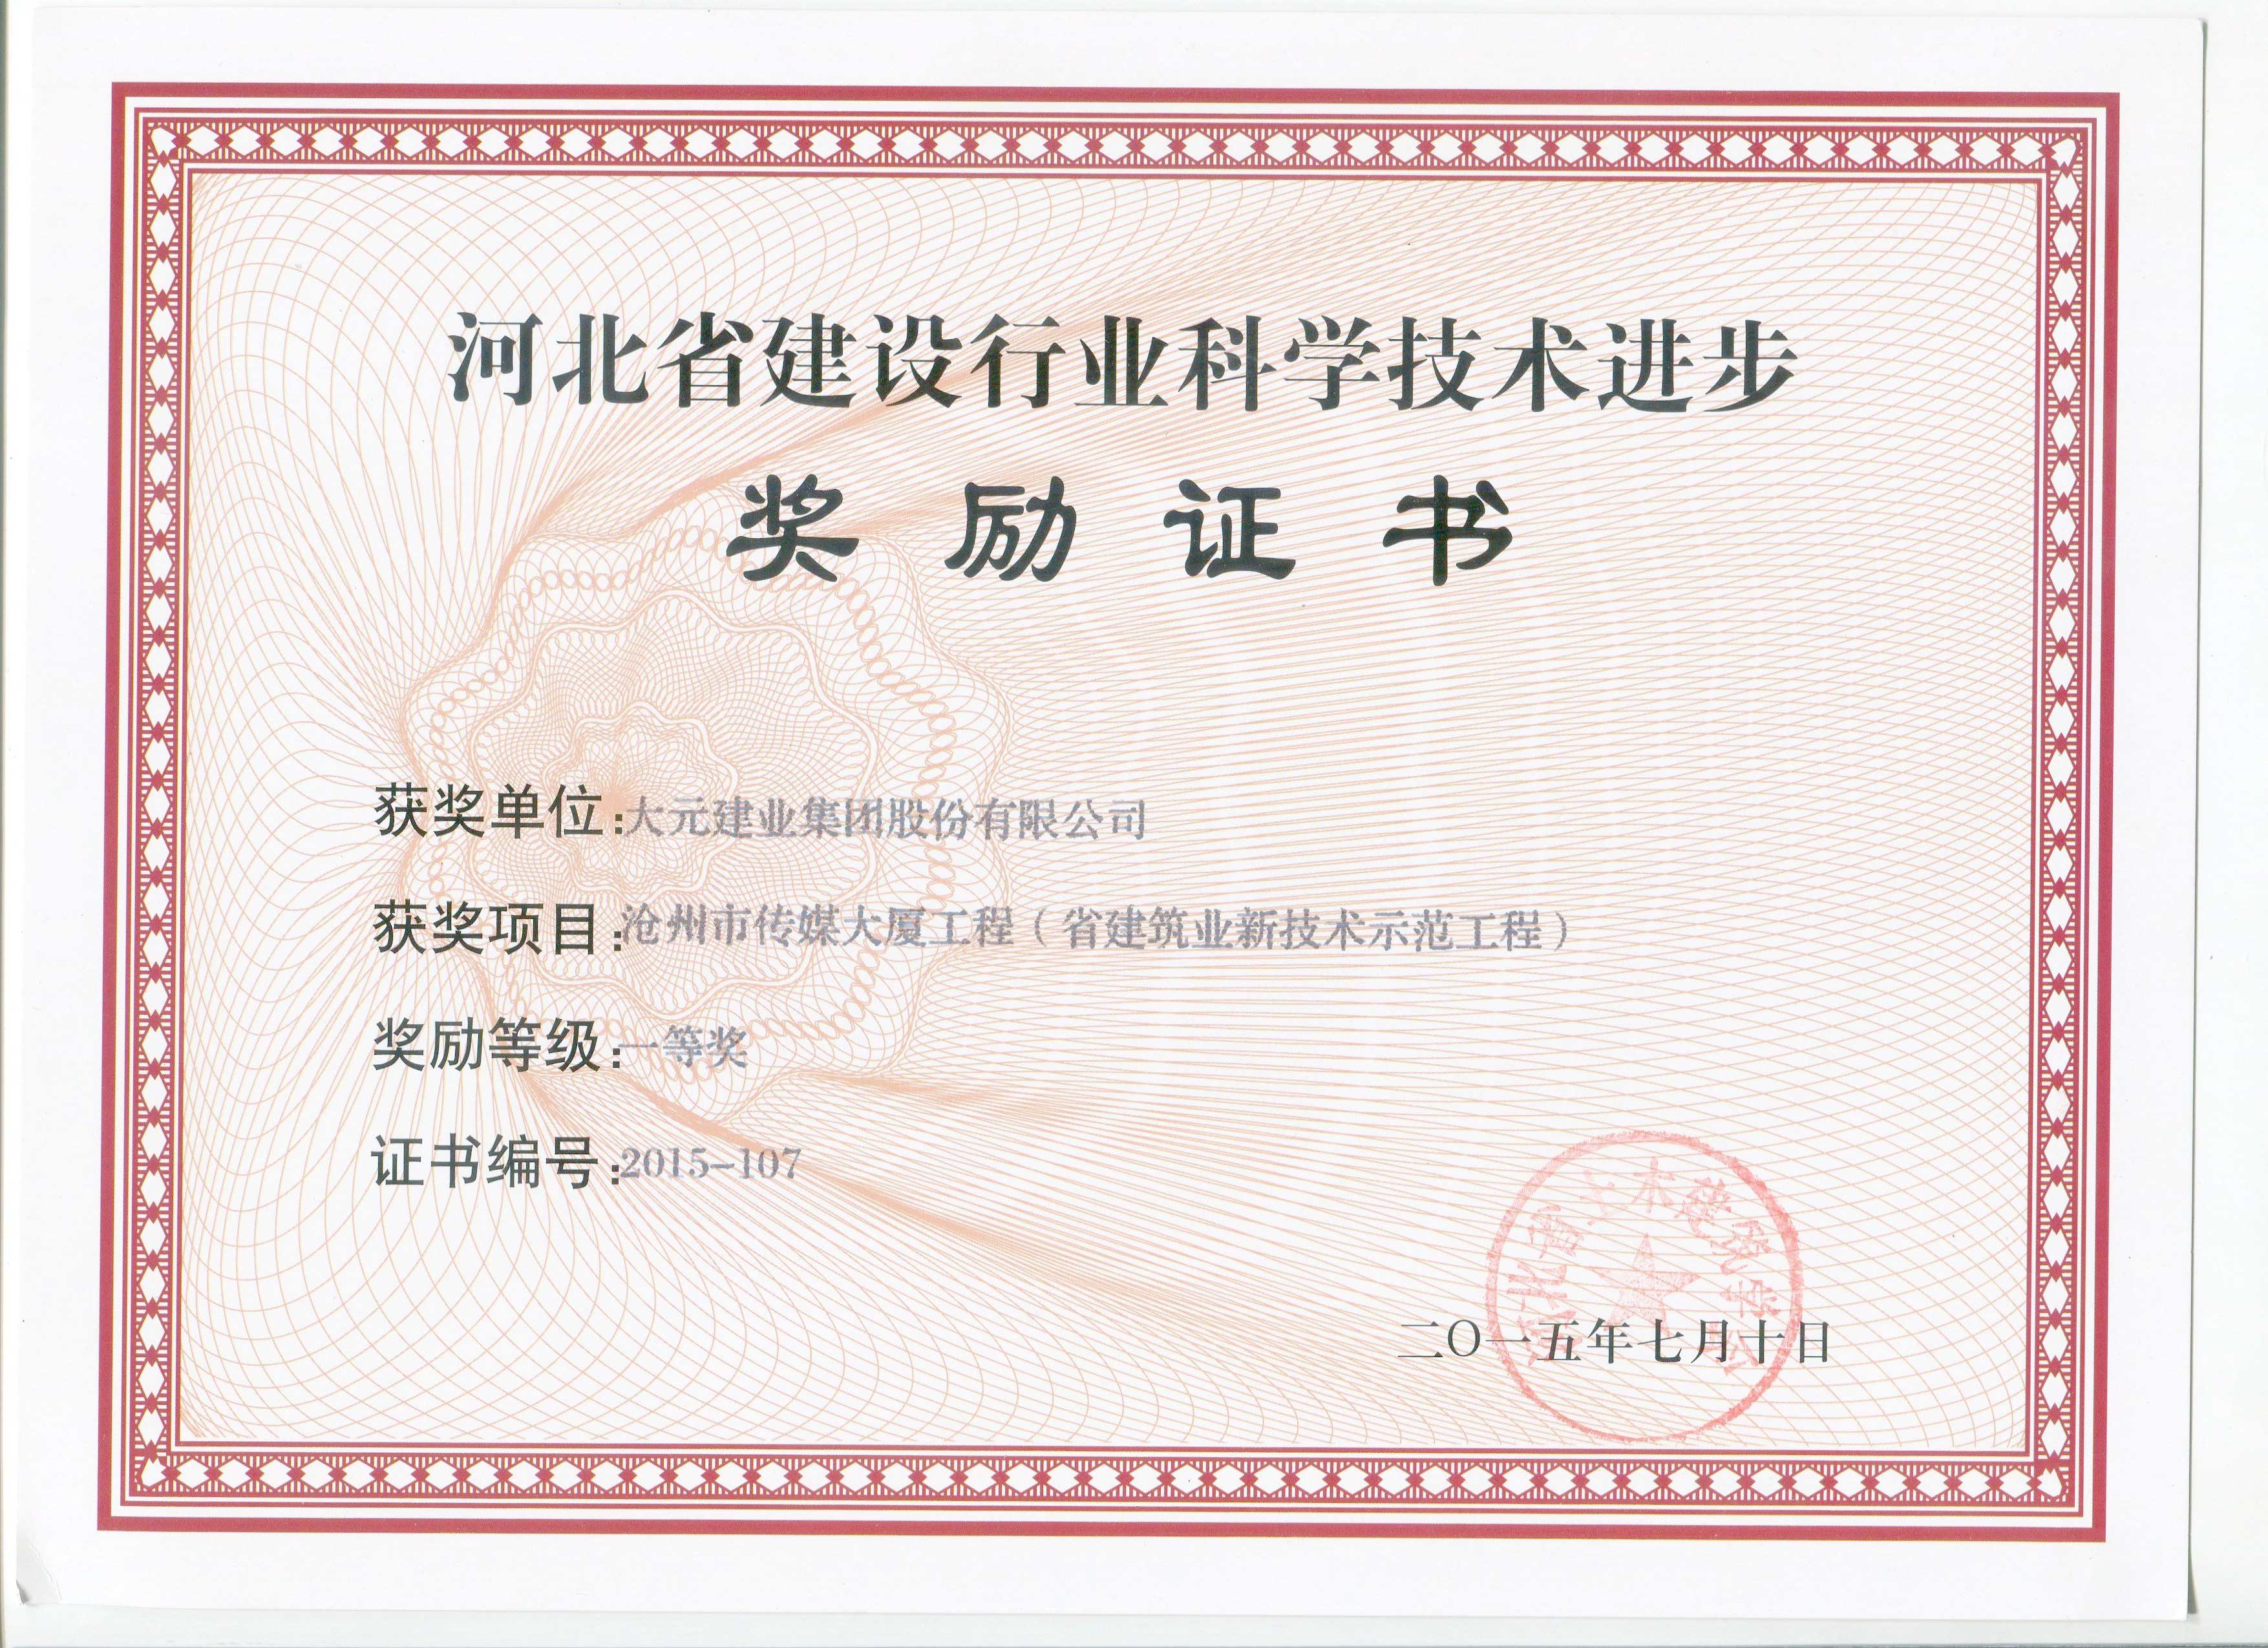 大元集团沧州市传媒大厦工程荣获河北省建设行业科学技术进步奖